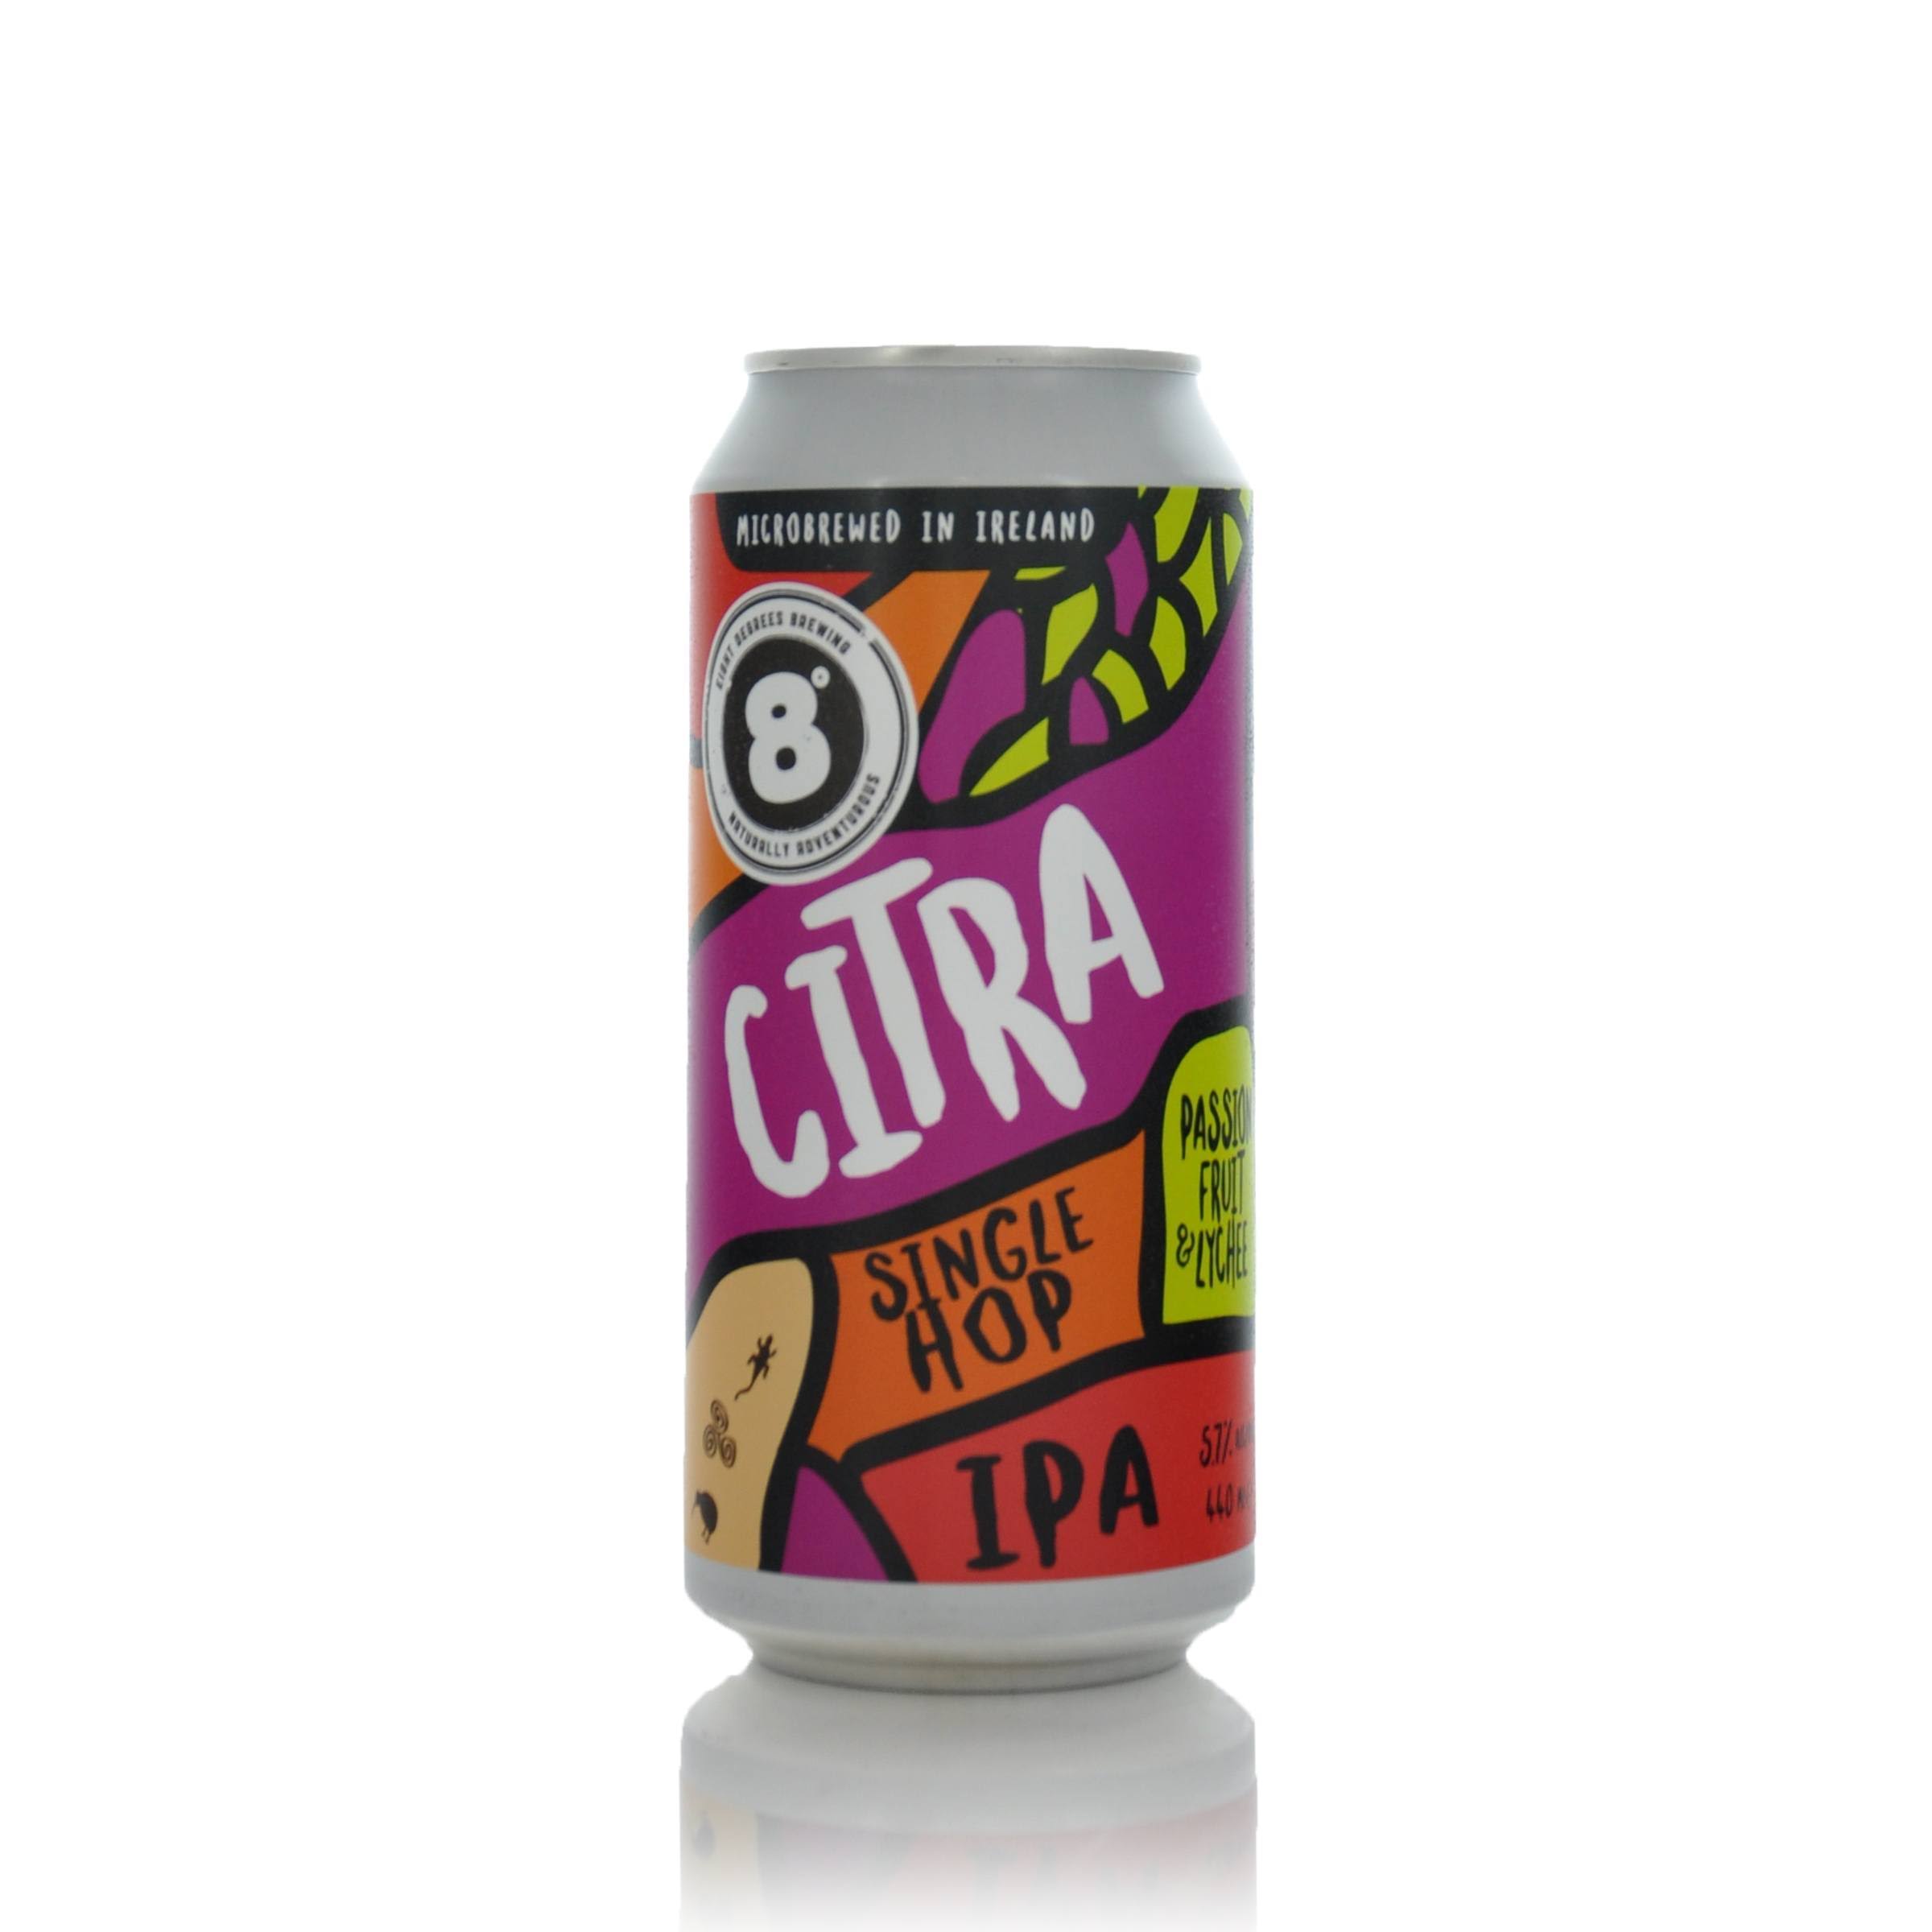 8 Degrees Brewing Citra Single Hop IPA 5.7% ABV